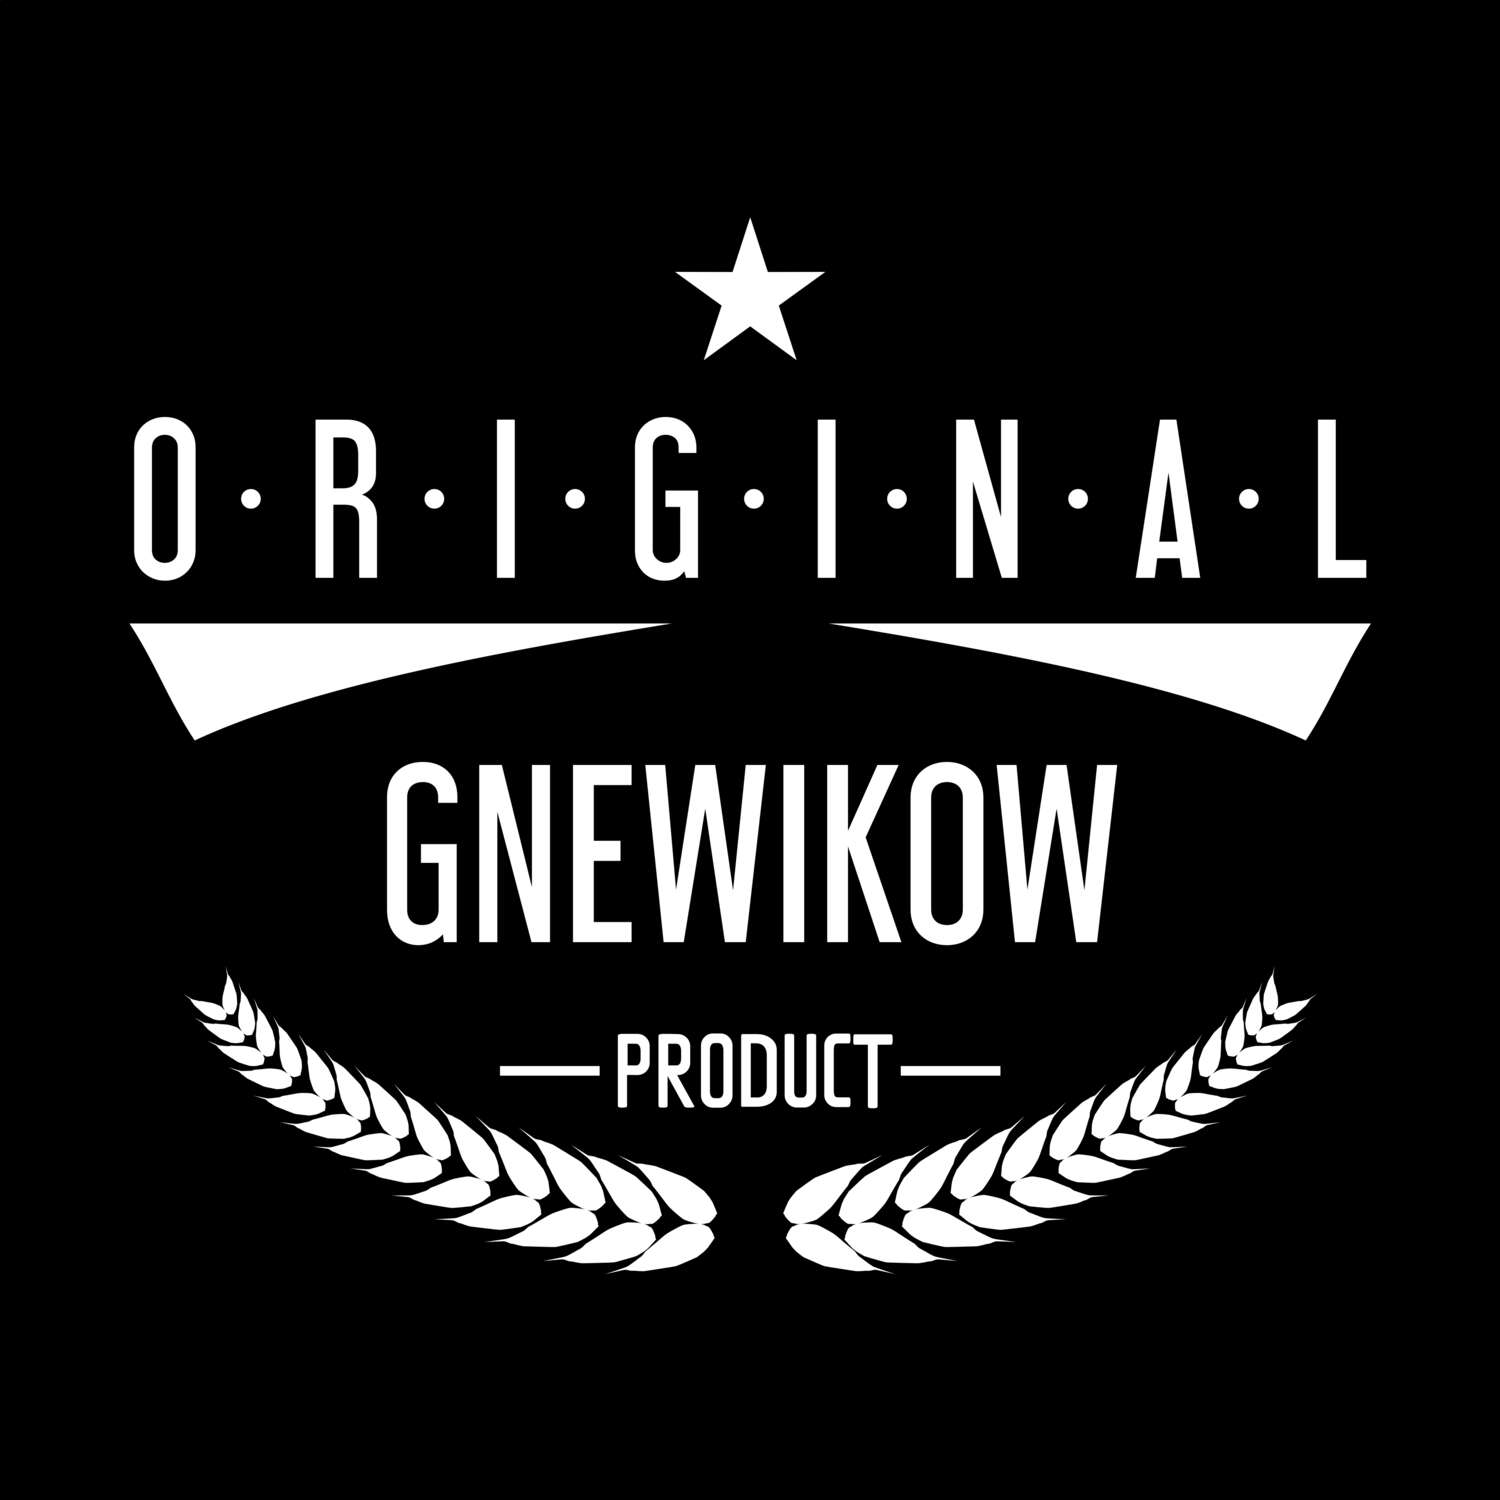 Gnewikow T-Shirt »Original Product«